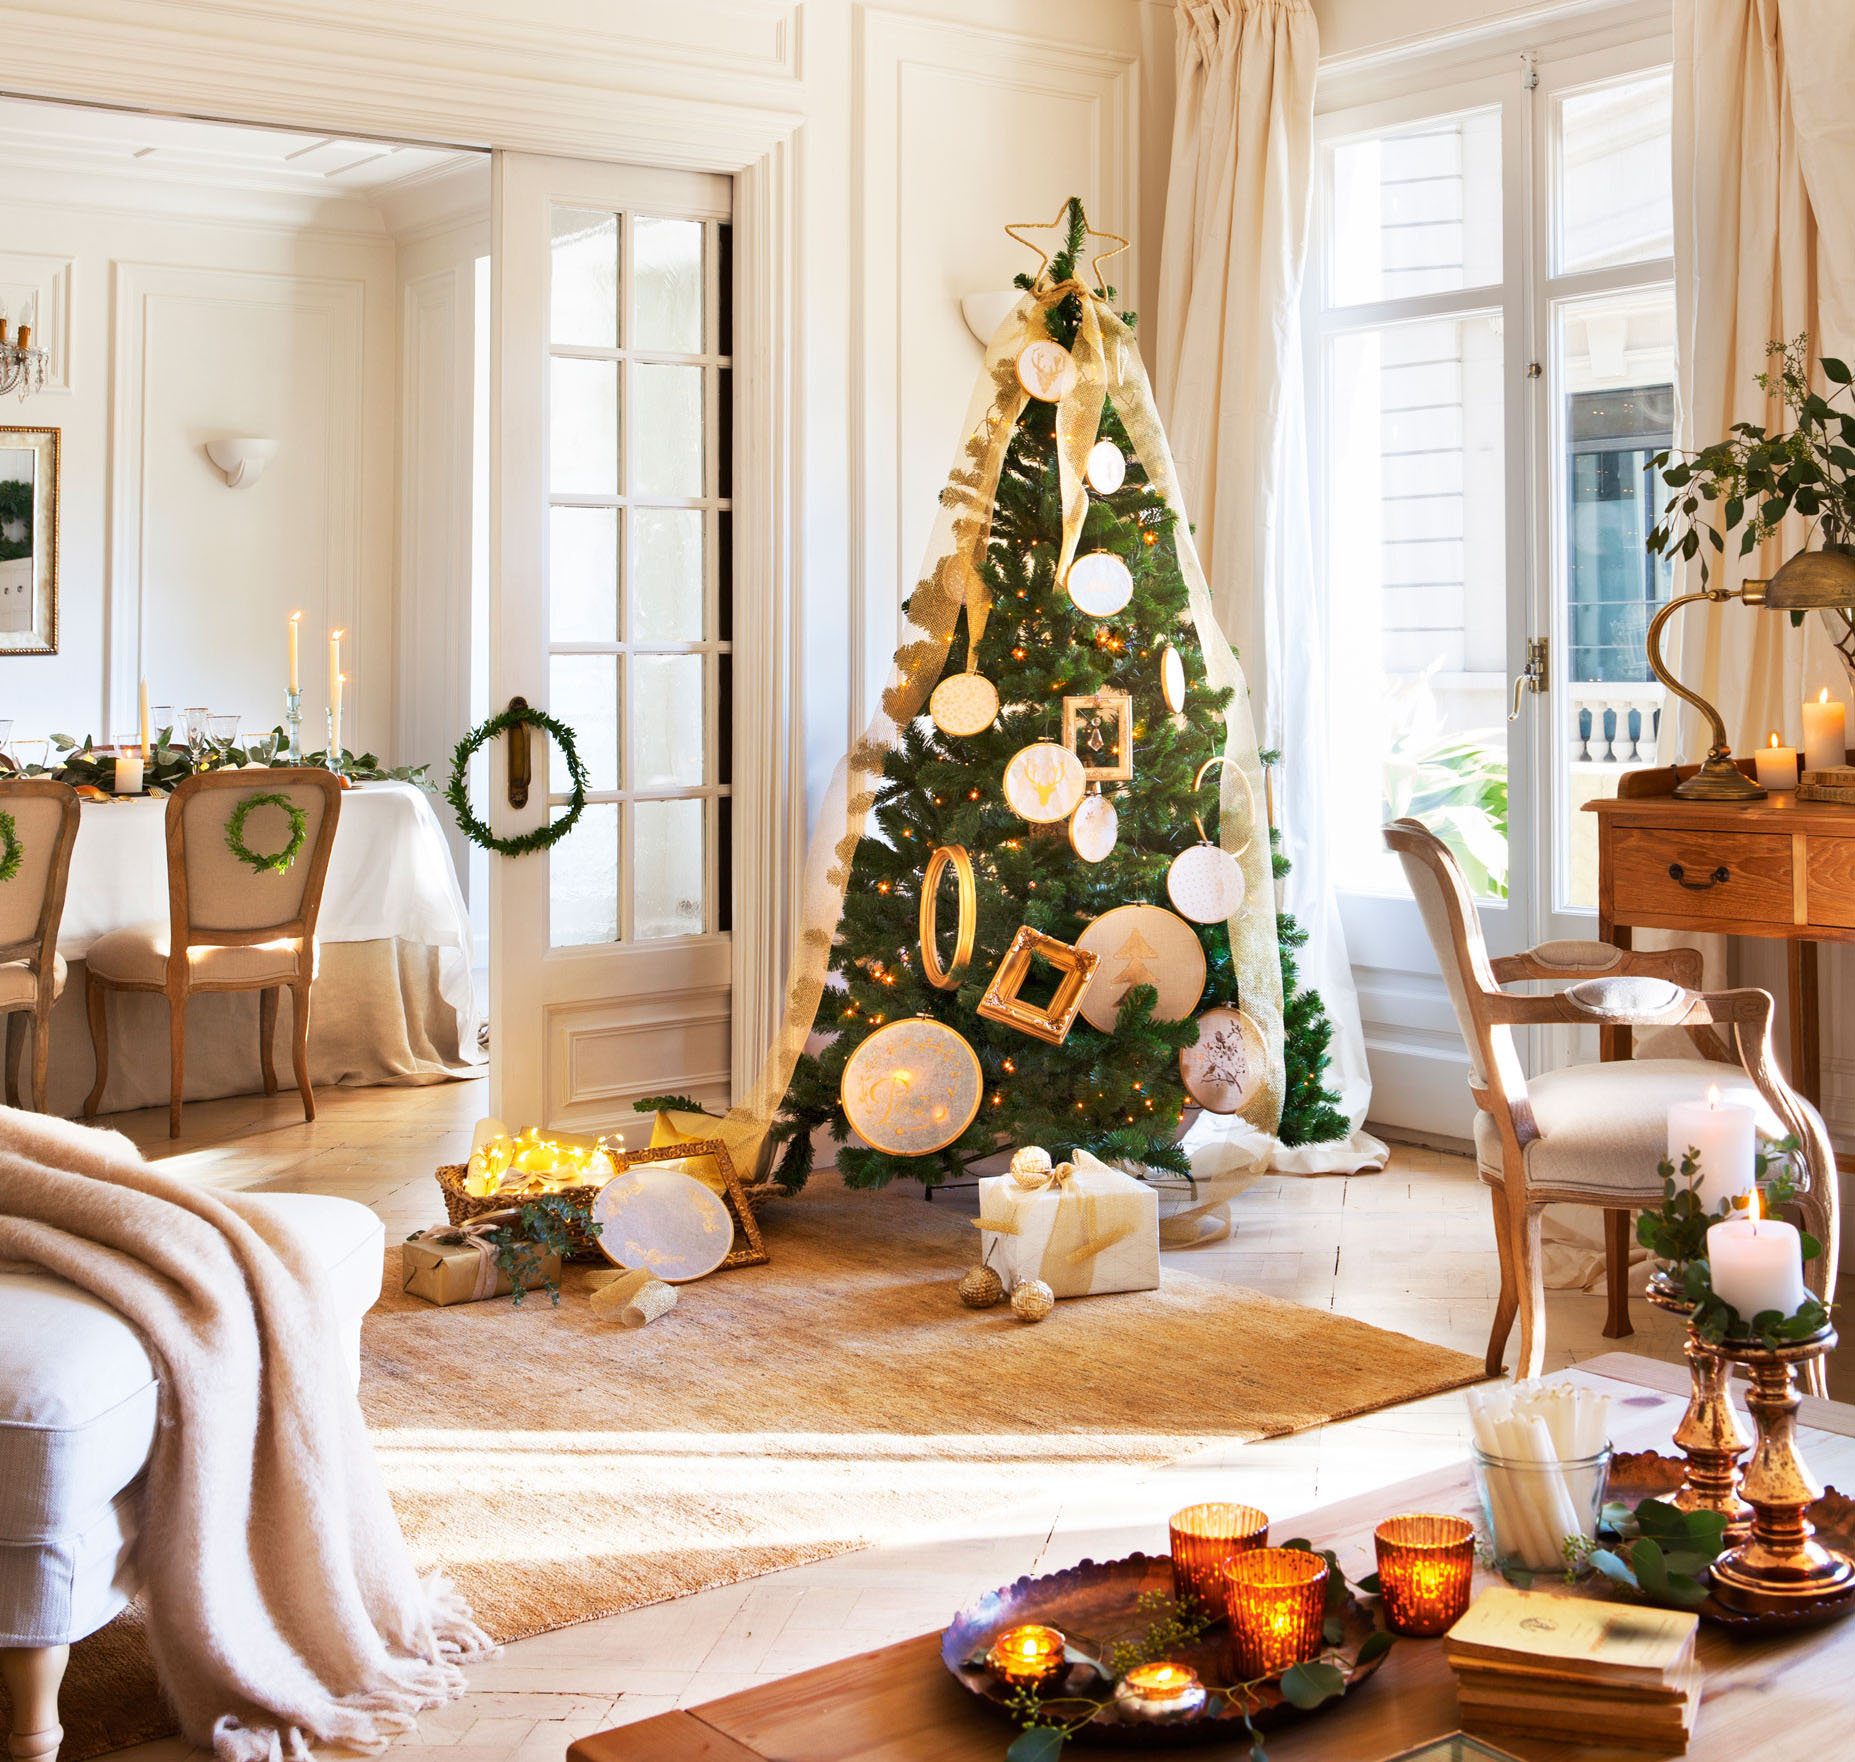 Salón comedor clásico con puerta acristalada, alfombra y árbol de Navidad al lado de la ventana con adornos dorados. 